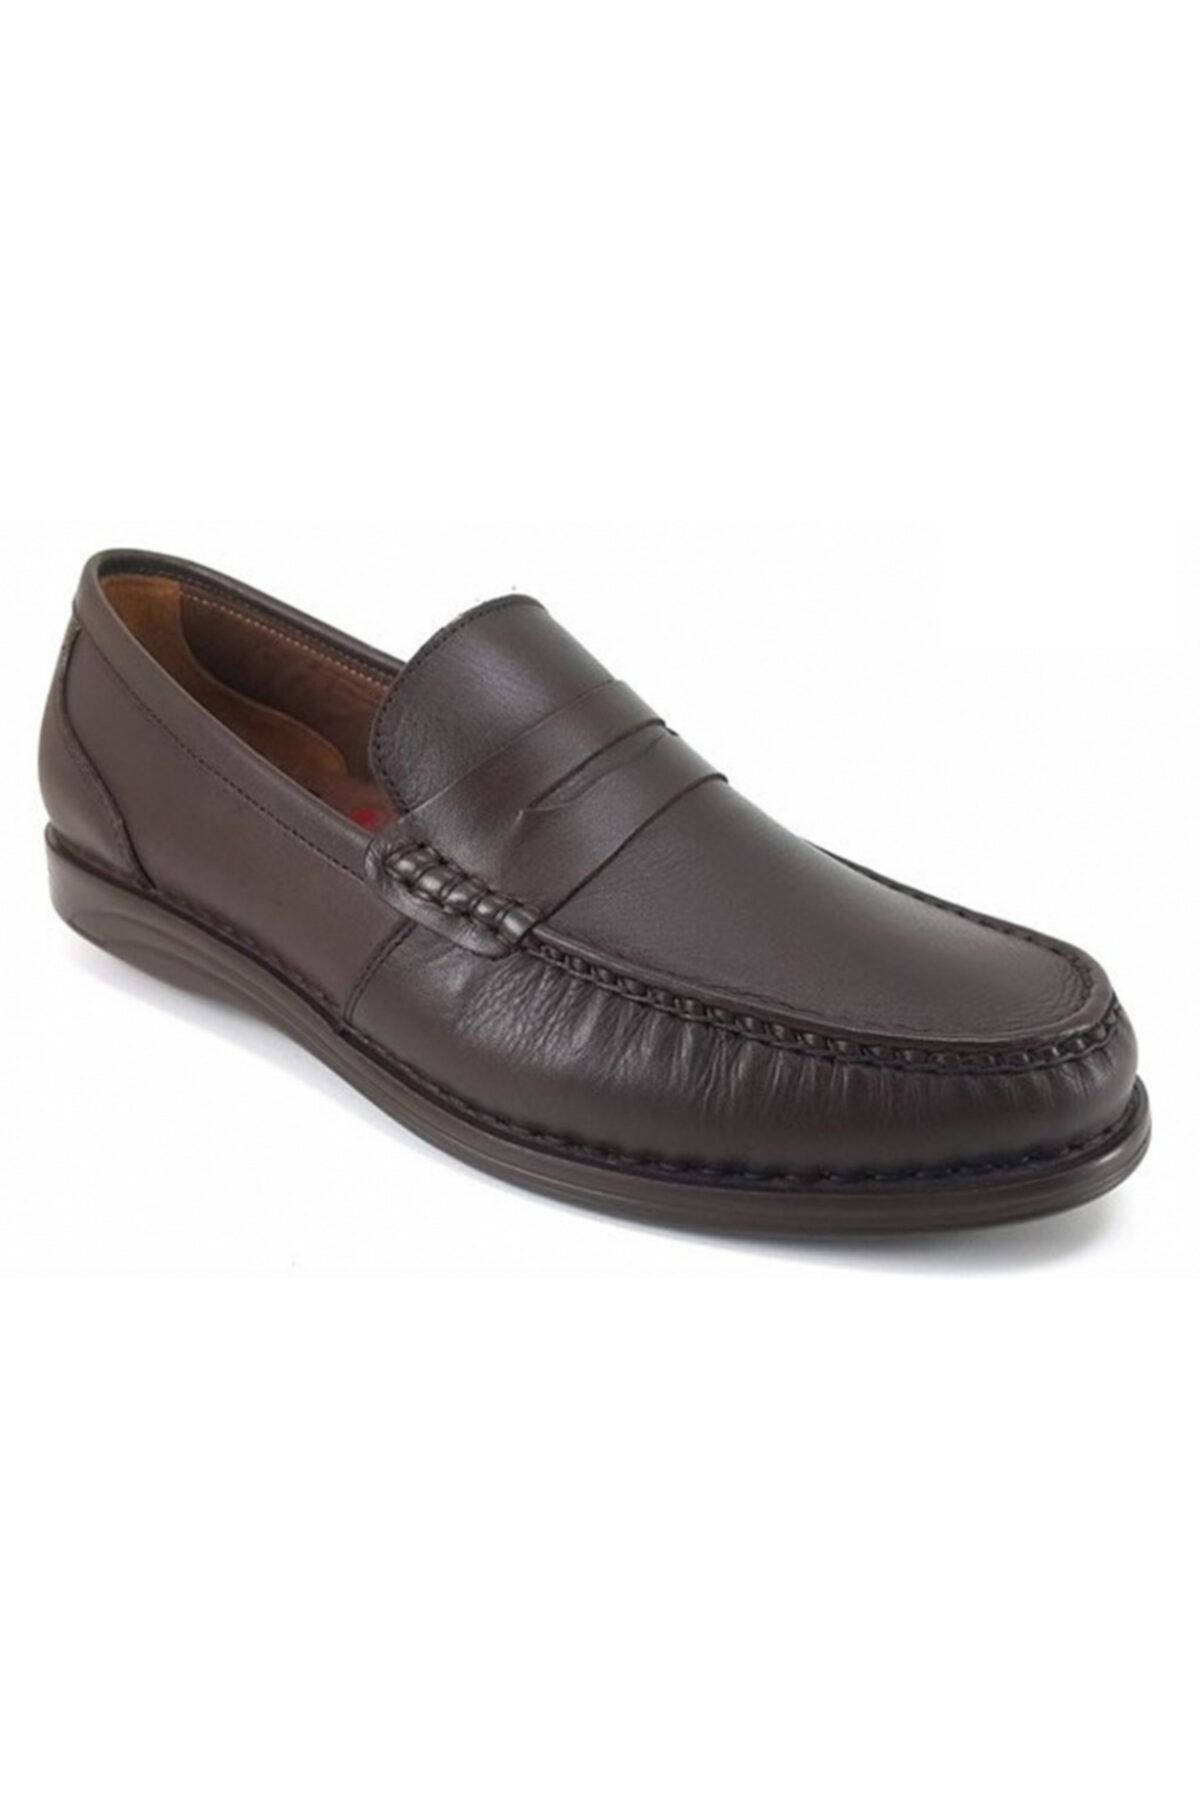 Libero 230 Erkek Günlük Ayakkabı - Kahverengi